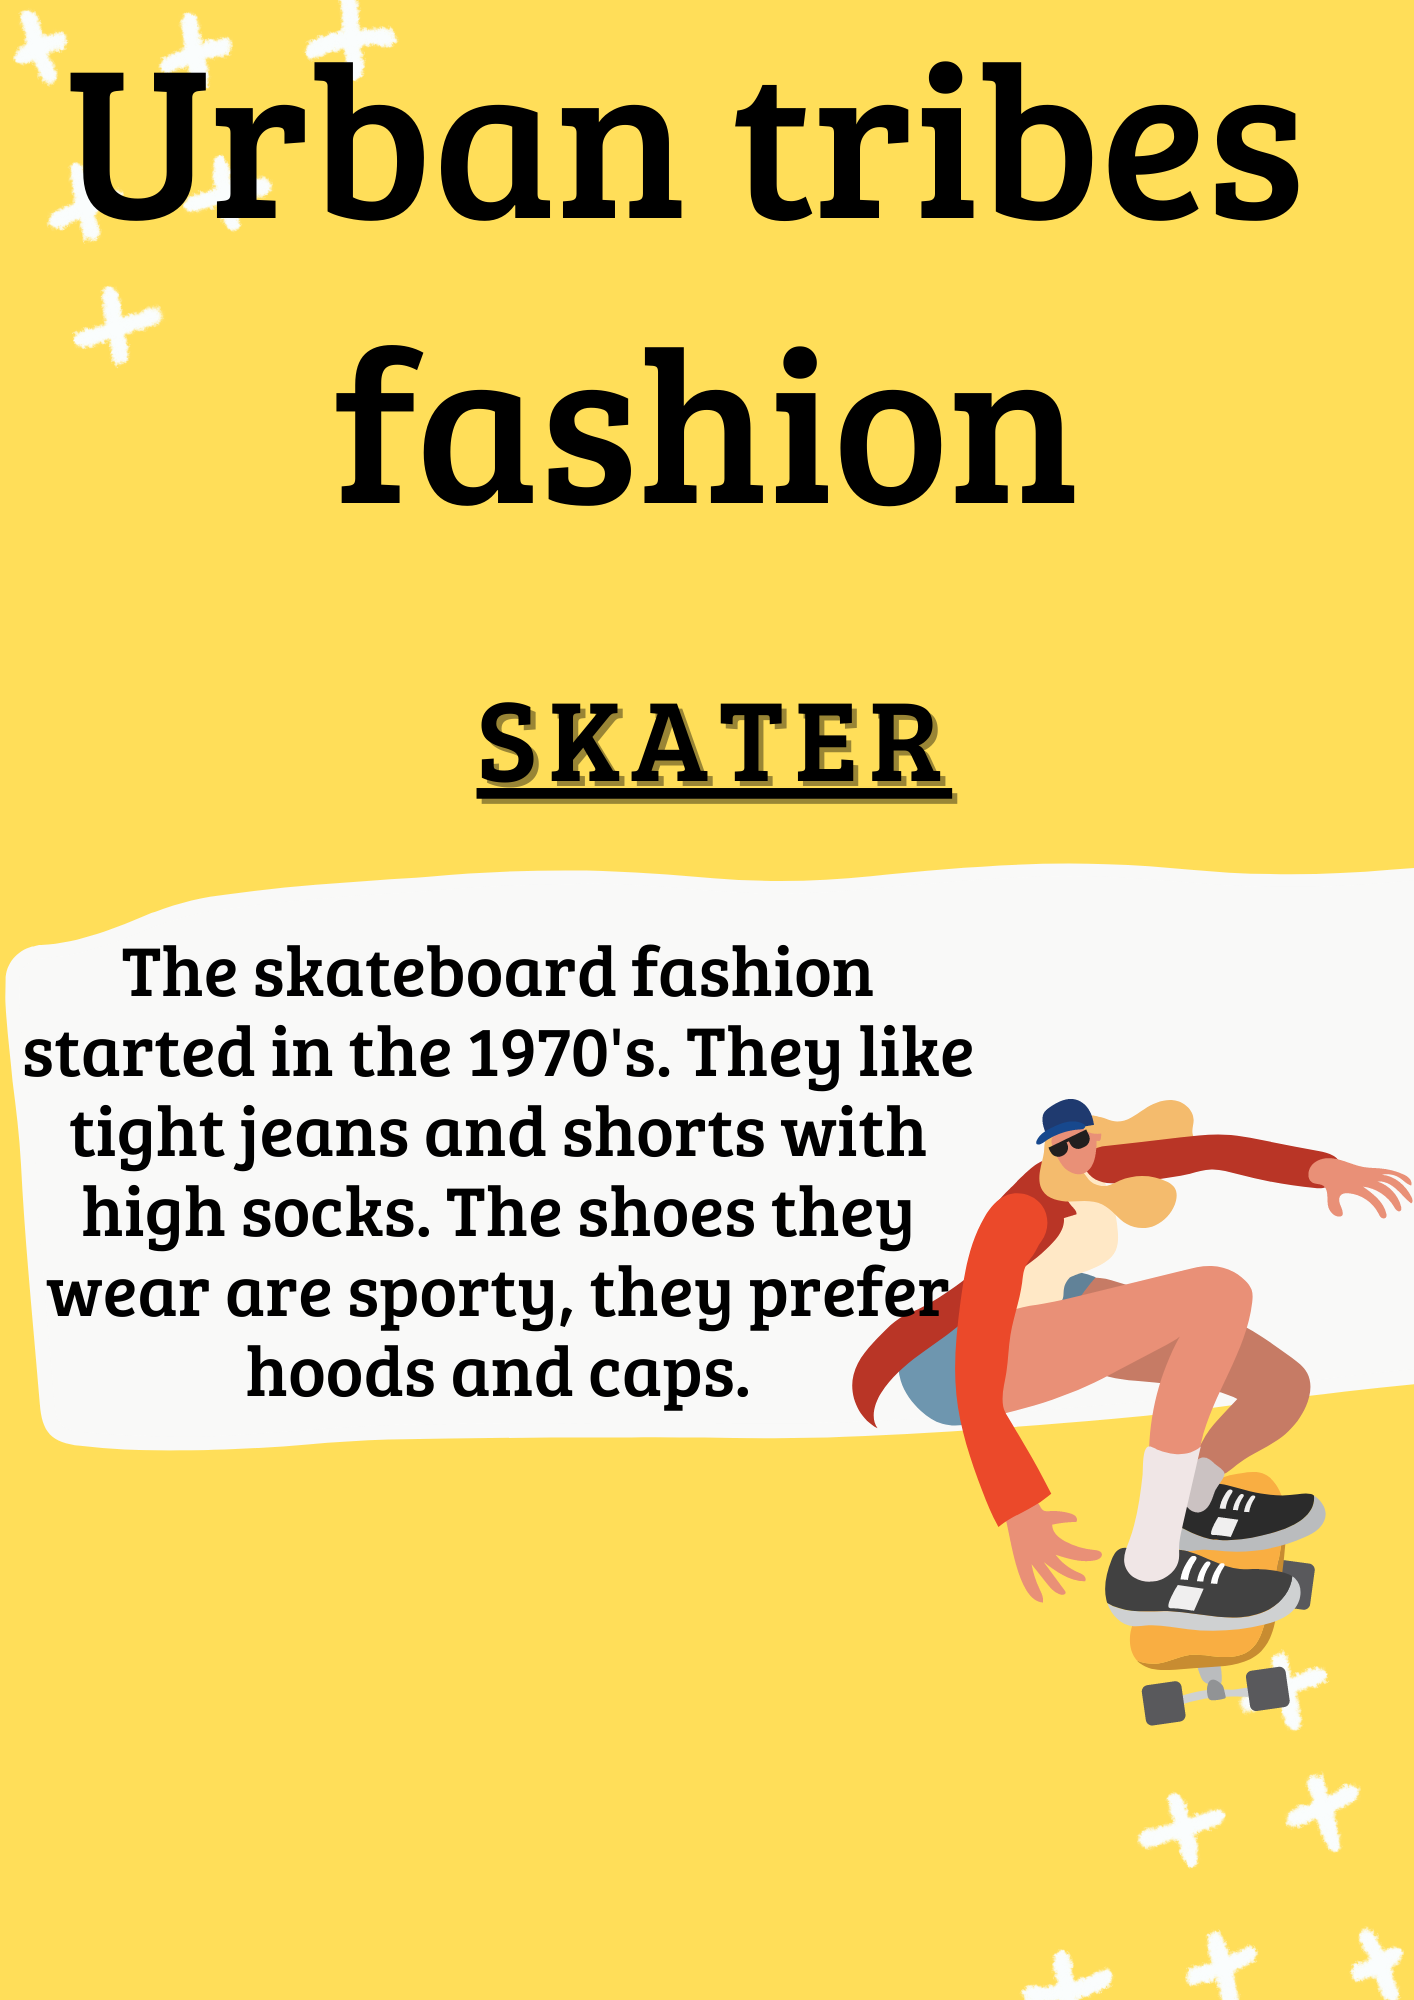 La imagen tiene fondo amarillo y letra en negro. El título de la imagen es Urban tribes fashion y debajo el subtítulo “skater”. Aparece una breve descripción a la izquierda y a la derecha la imagen de una chica con un patinete.